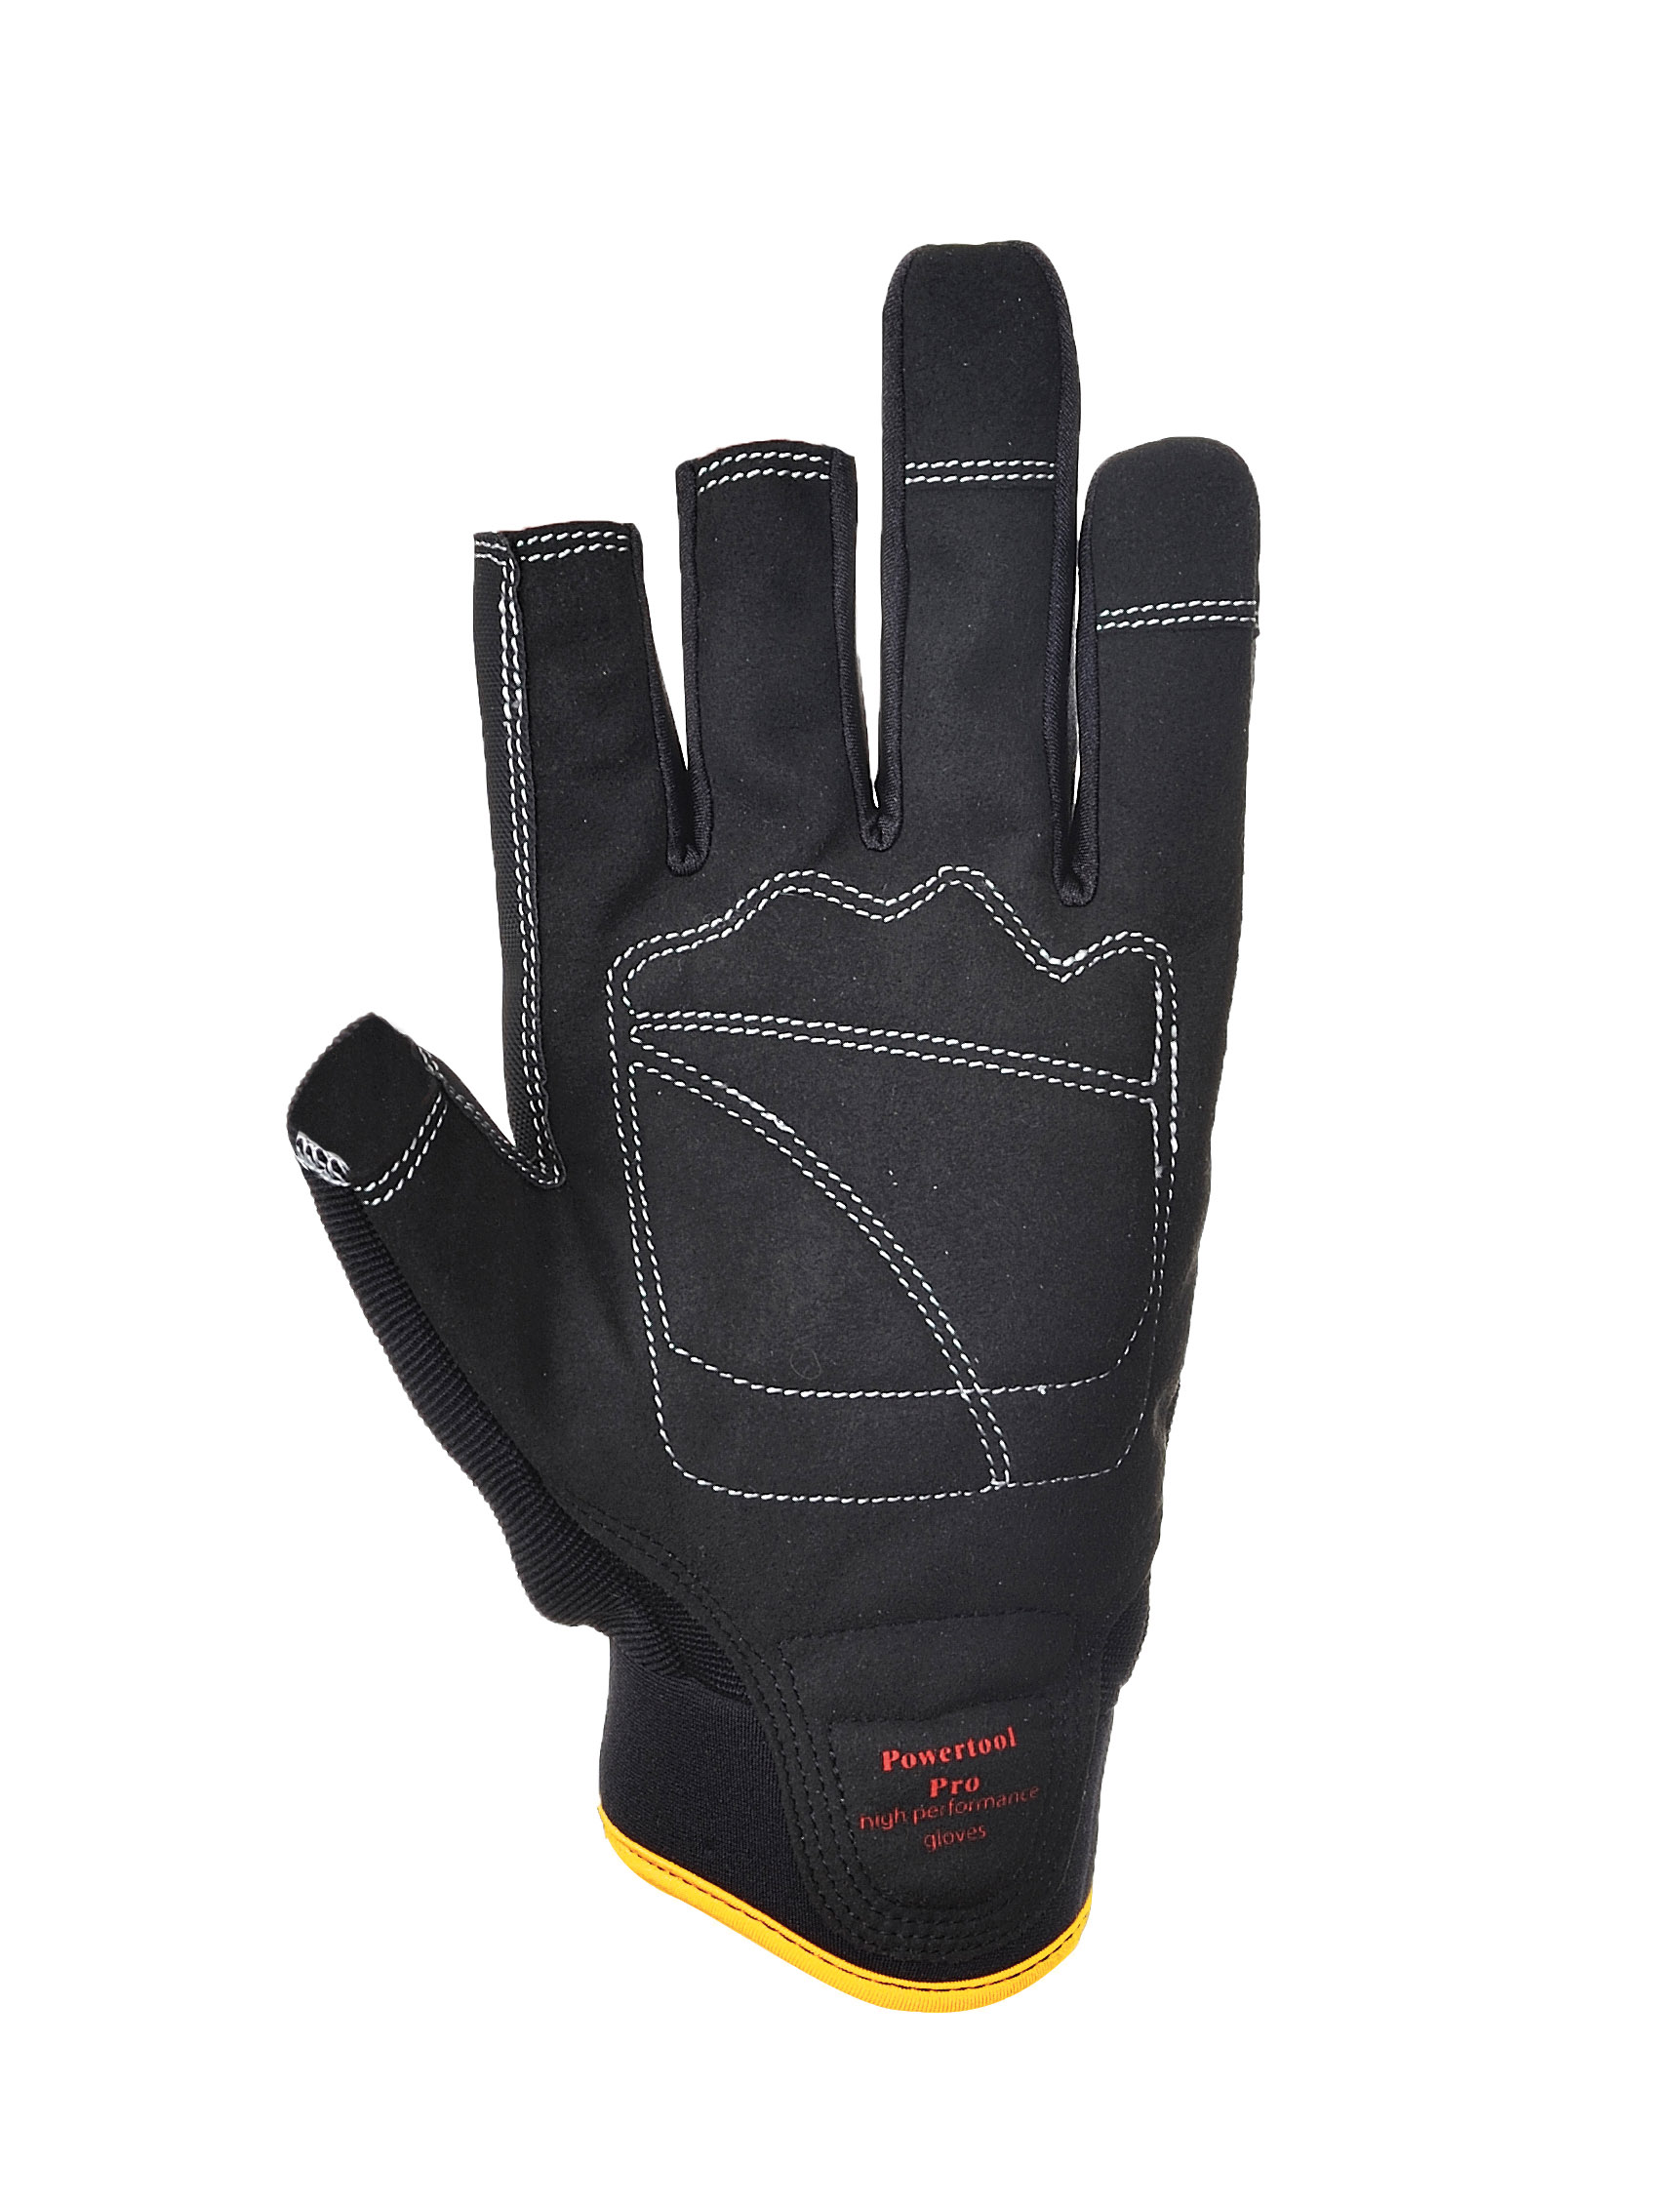 Portwest Powertool Pro High Performance Work Glove Safety Workwear Garage A740 